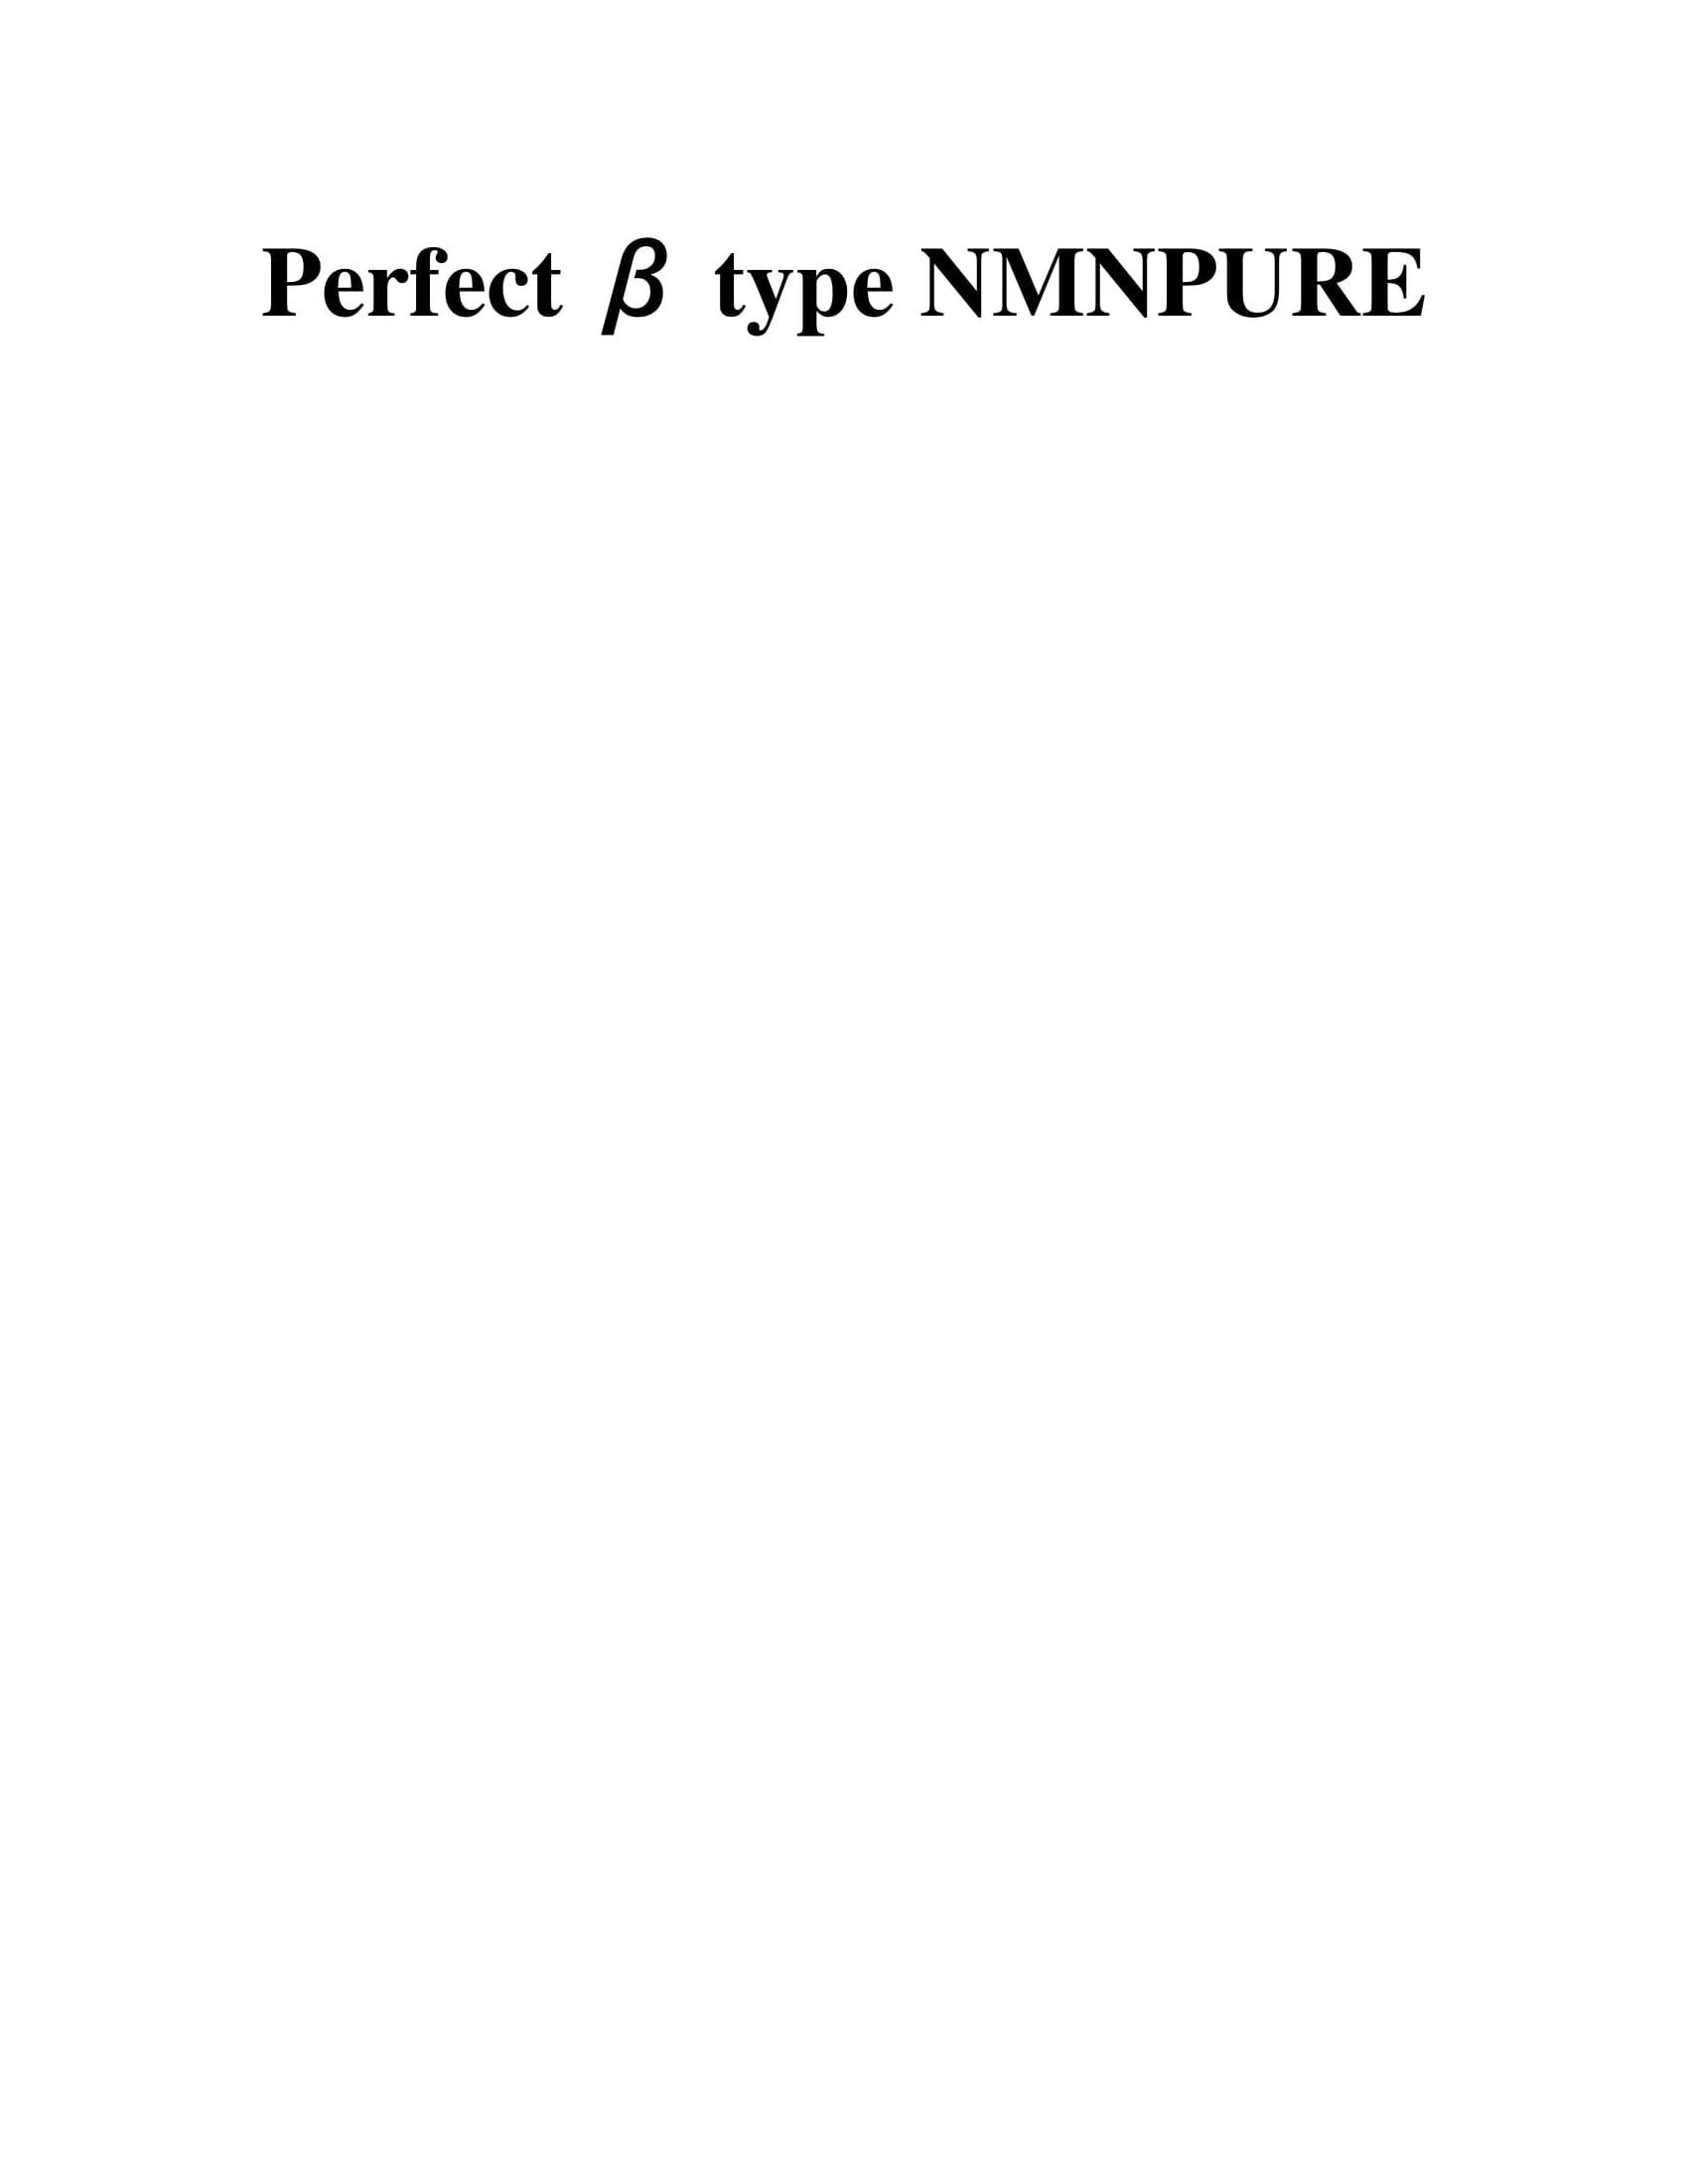  PERFECT BETA TYPE NMNPURE